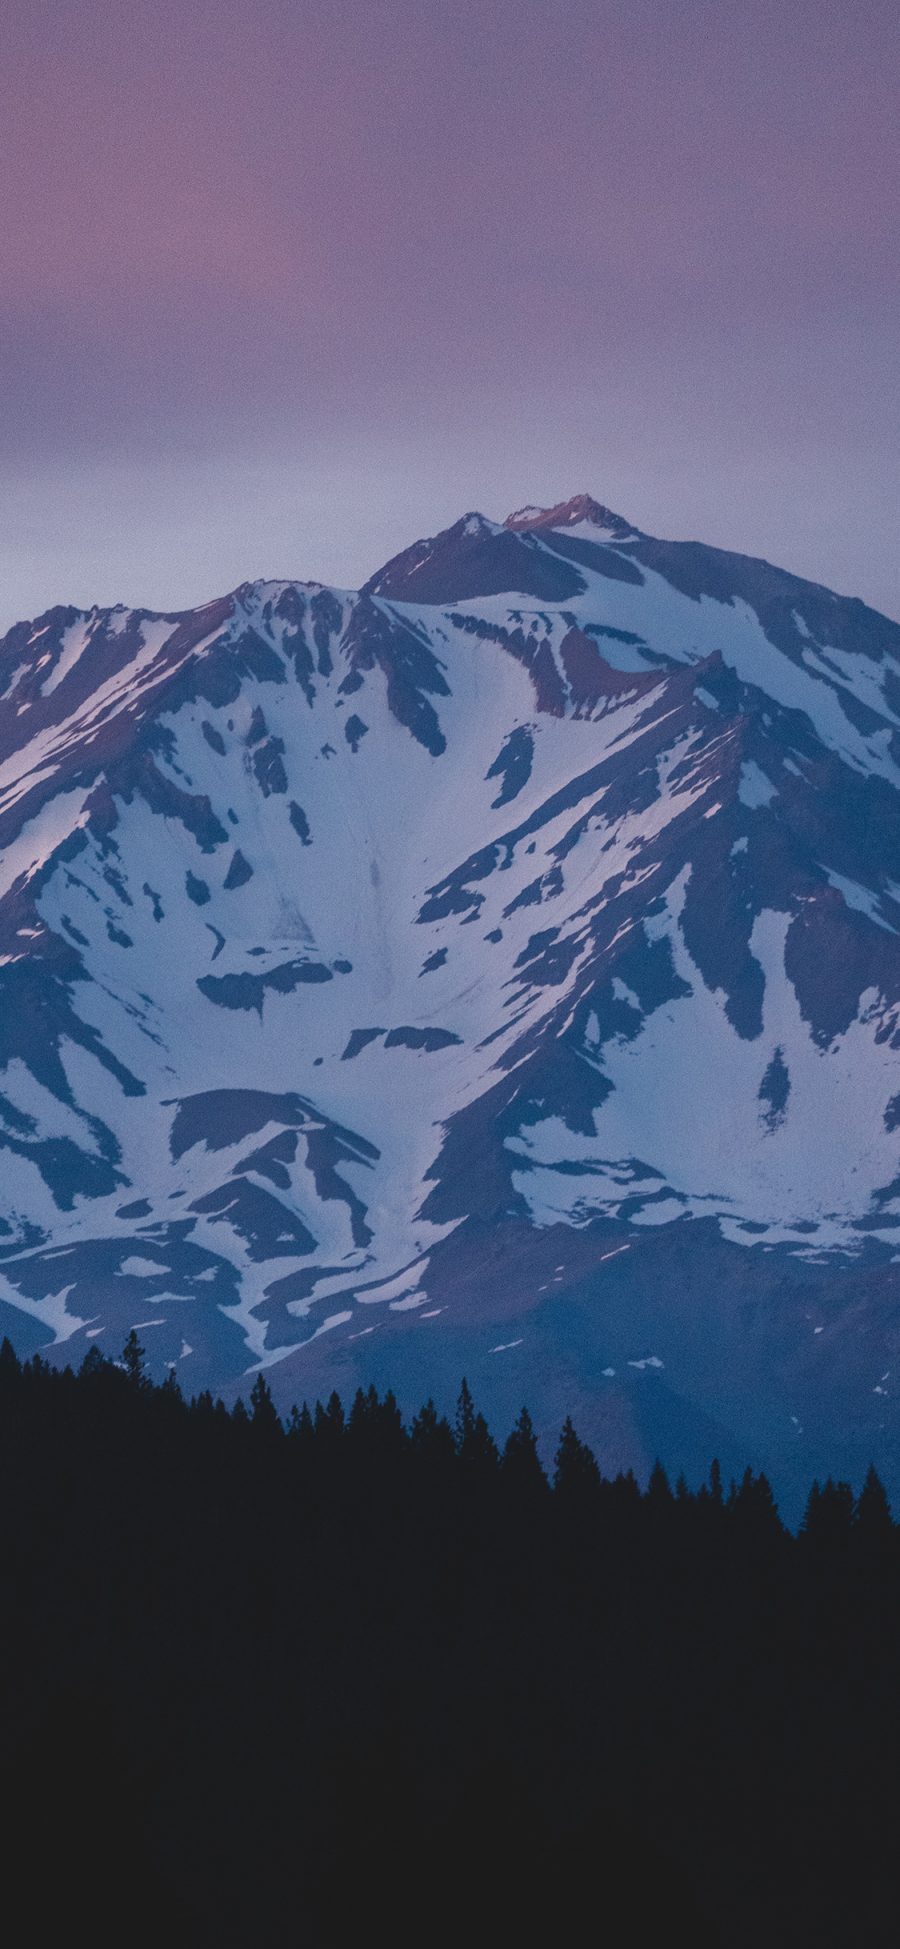 [2436×1125]郊外 山峰 白雪覆盖 壮观 苹果手机壁纸图片